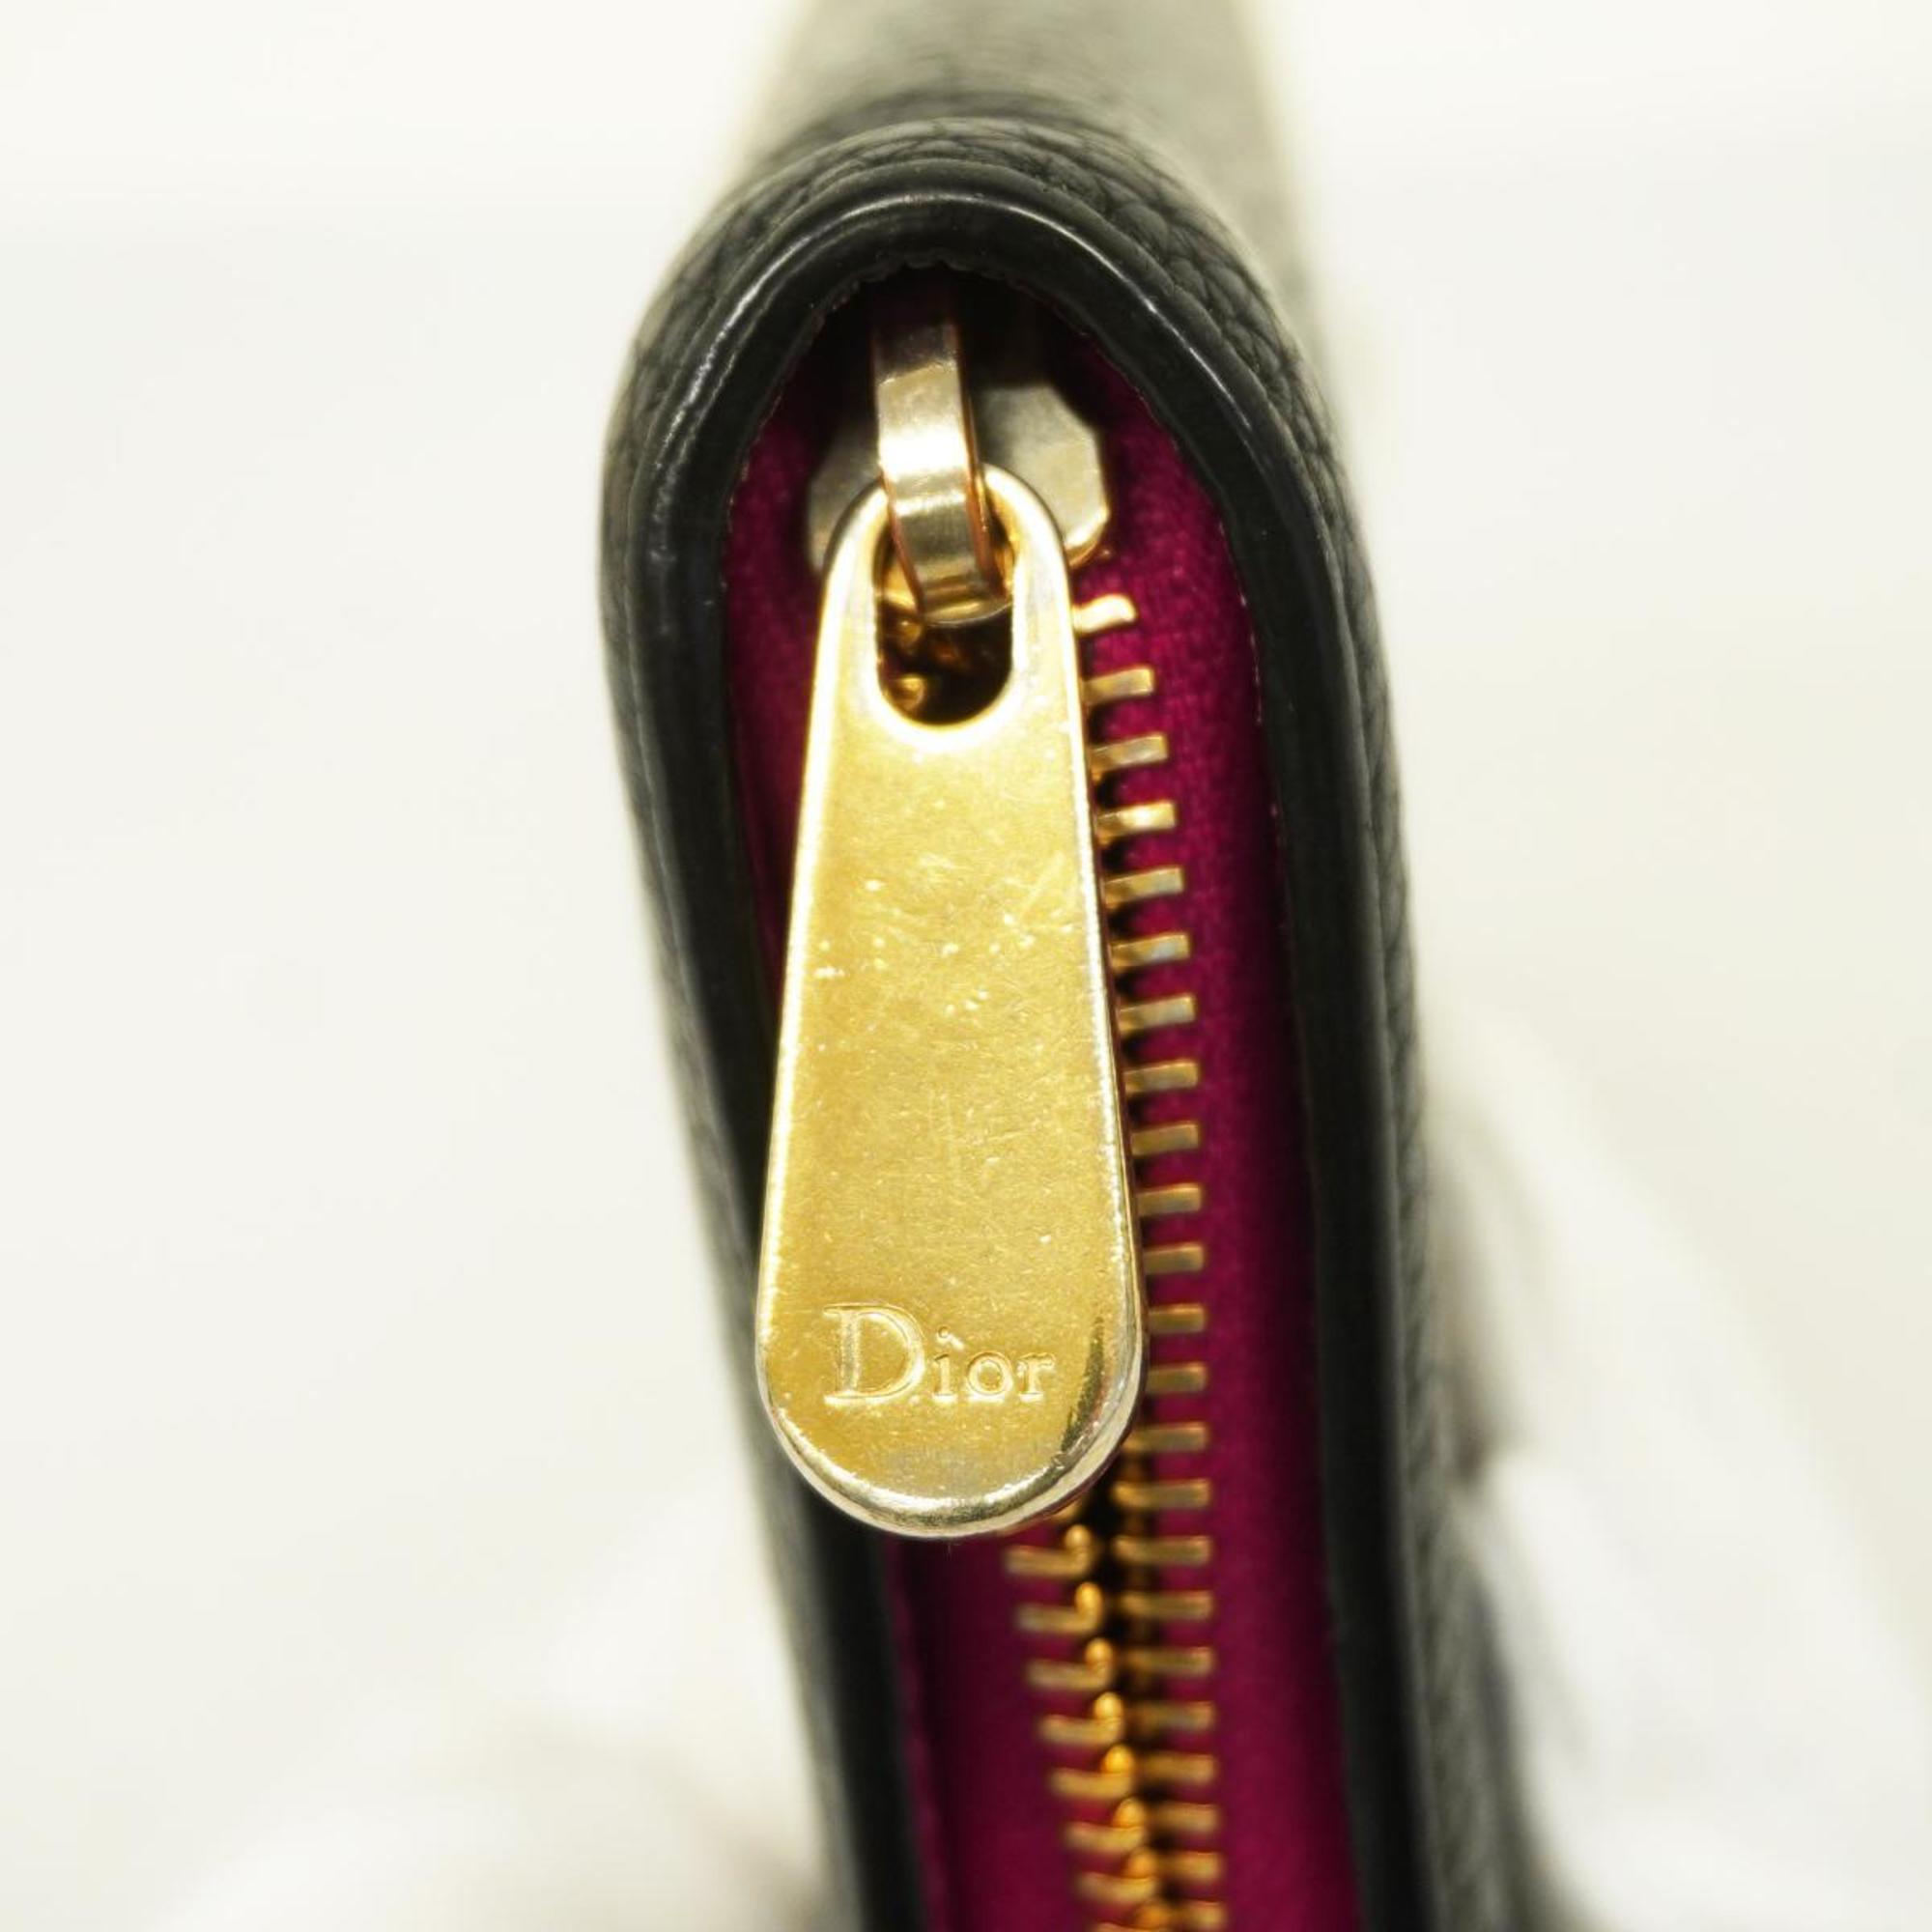 クリスチャン・ディオール(Christian Dior) クリスチャンディオール 長財布 レザー ブラック シャンパン  レディース